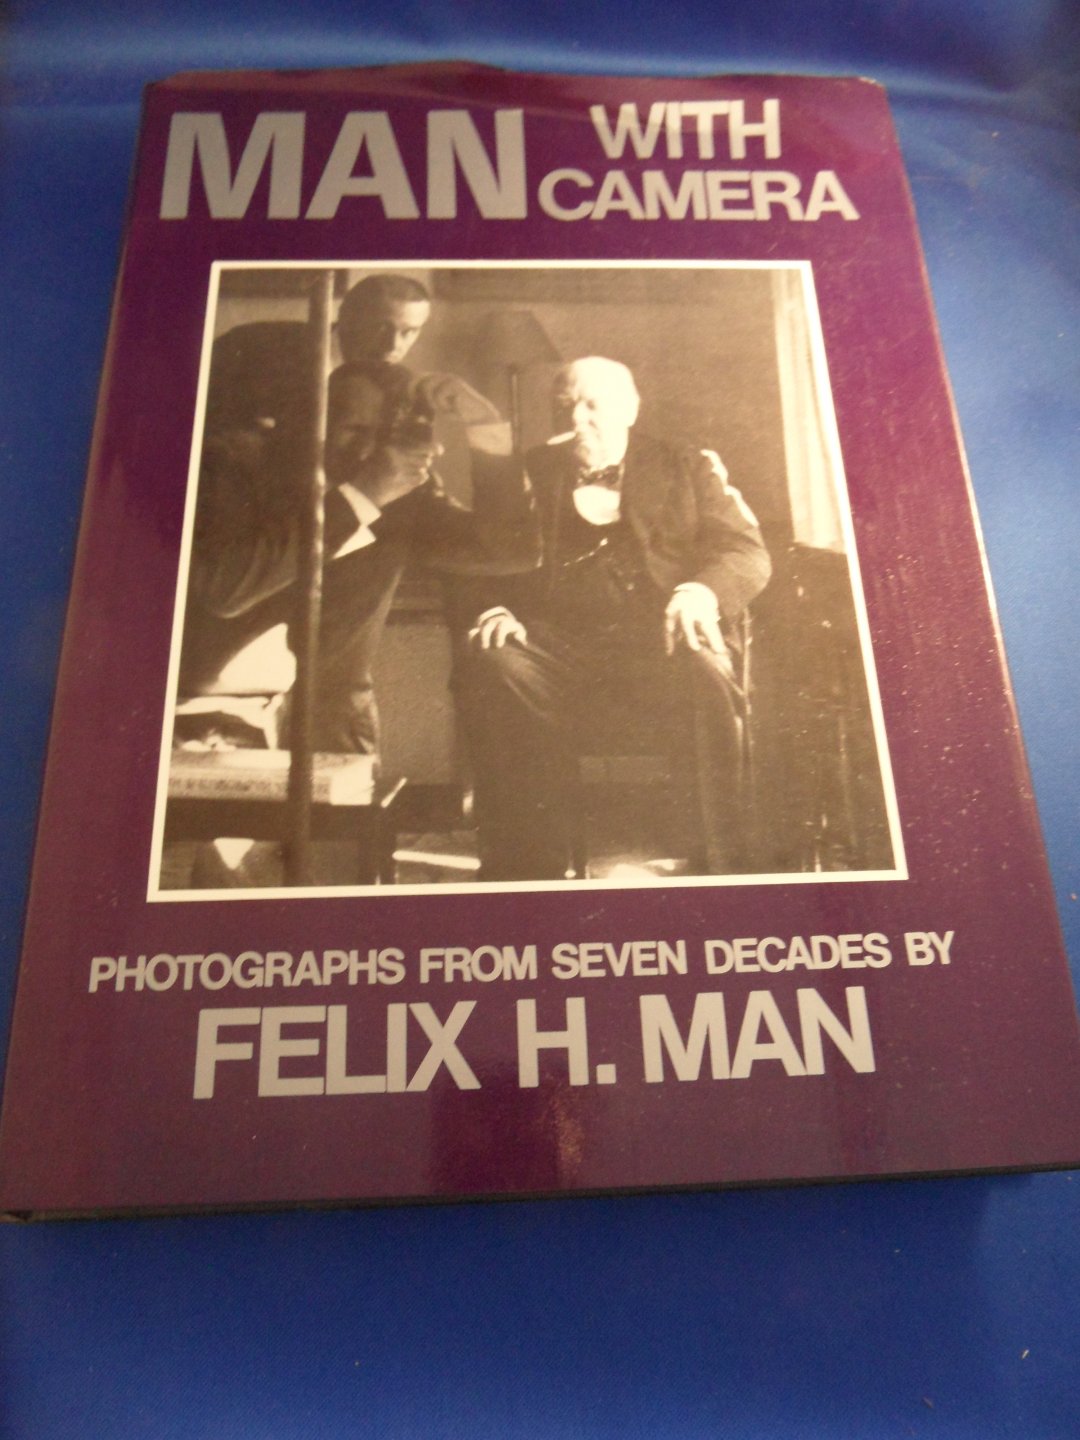 Man, Felix H. - Man with Camera